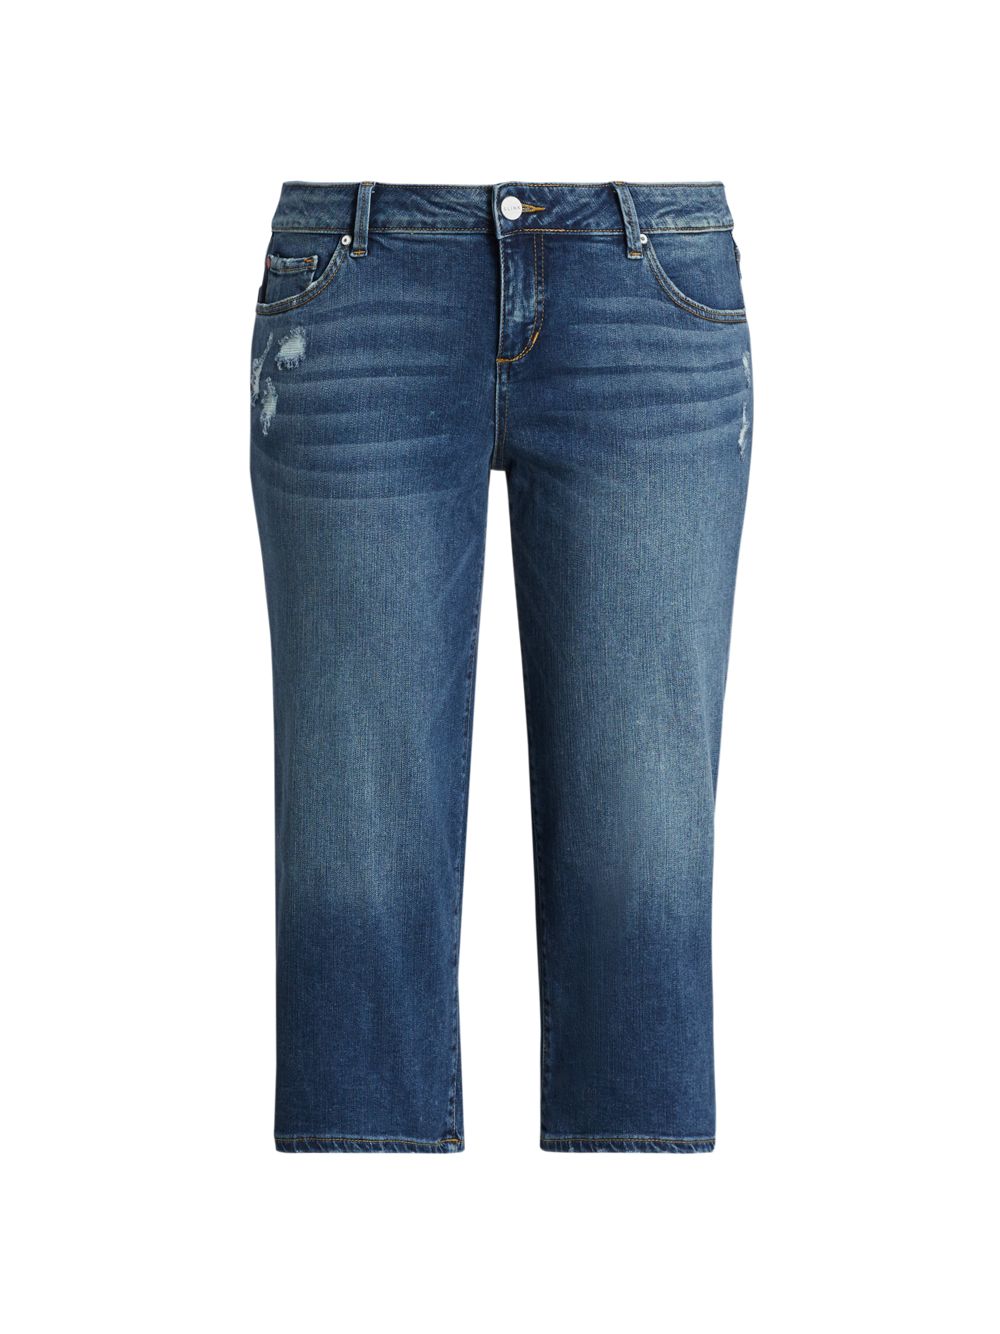 Широкие укороченные джинсы со средней посадкой Slink Jeans, Plus Size, синий джинсы бойфренды kennedi со средней посадкой slink jeans plus size цвет kennedi